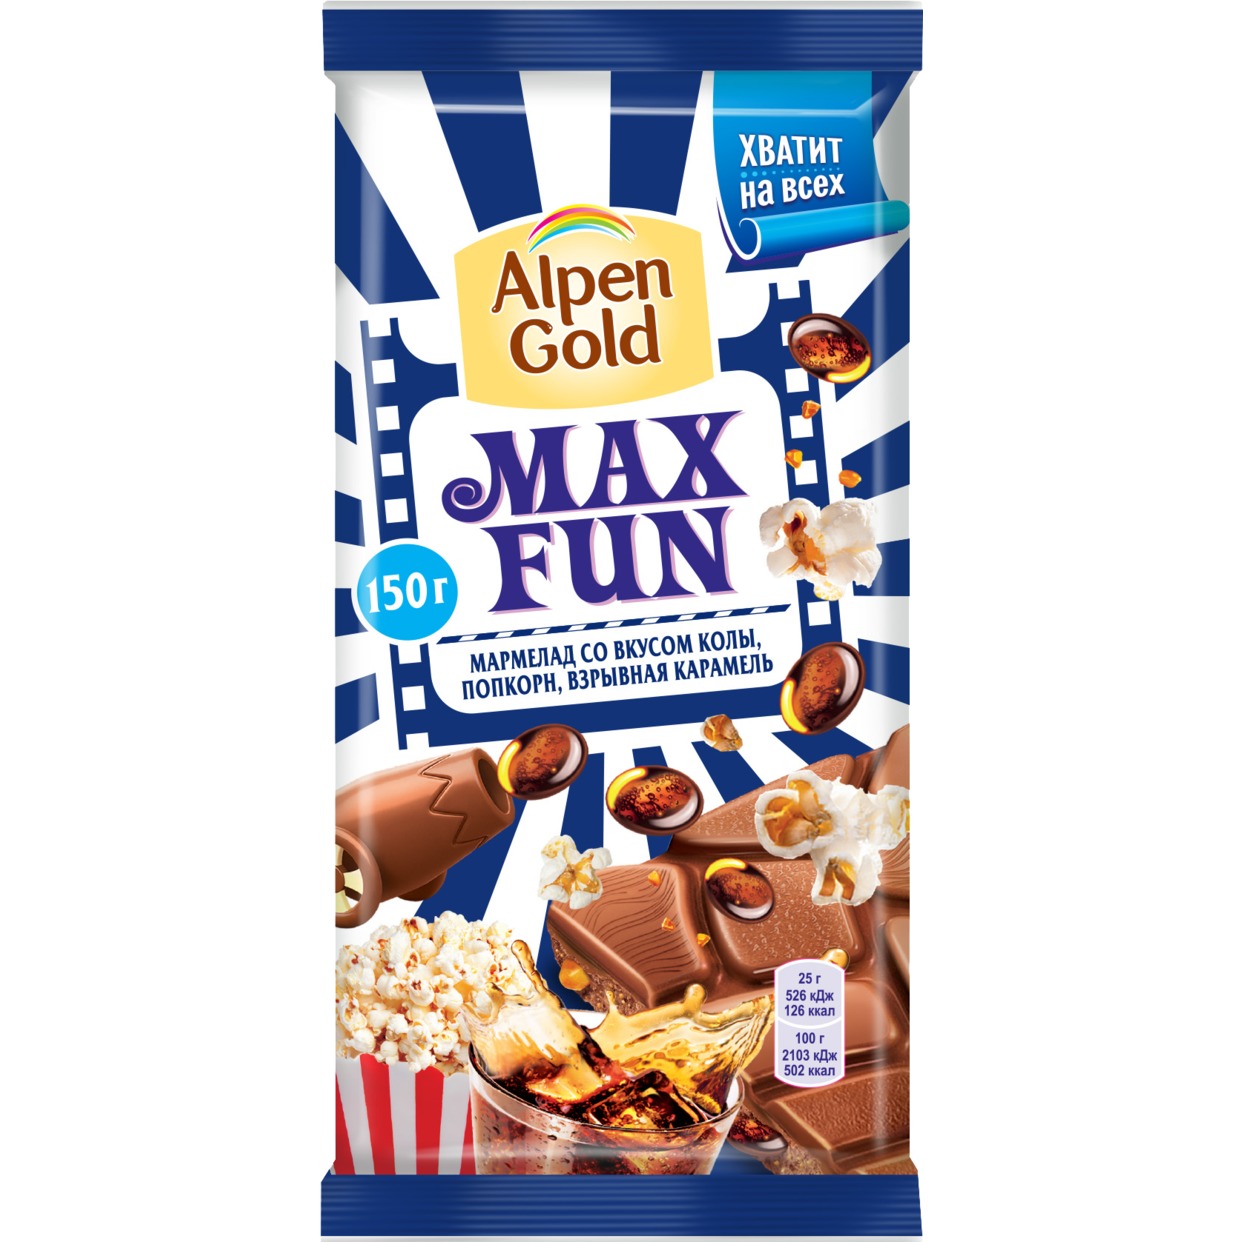 Шоколад молочный Alpen Gold Альпен Гольд Максфан с мармеладом со вкусом колы, попкорном и взрывной карамелью, 150г